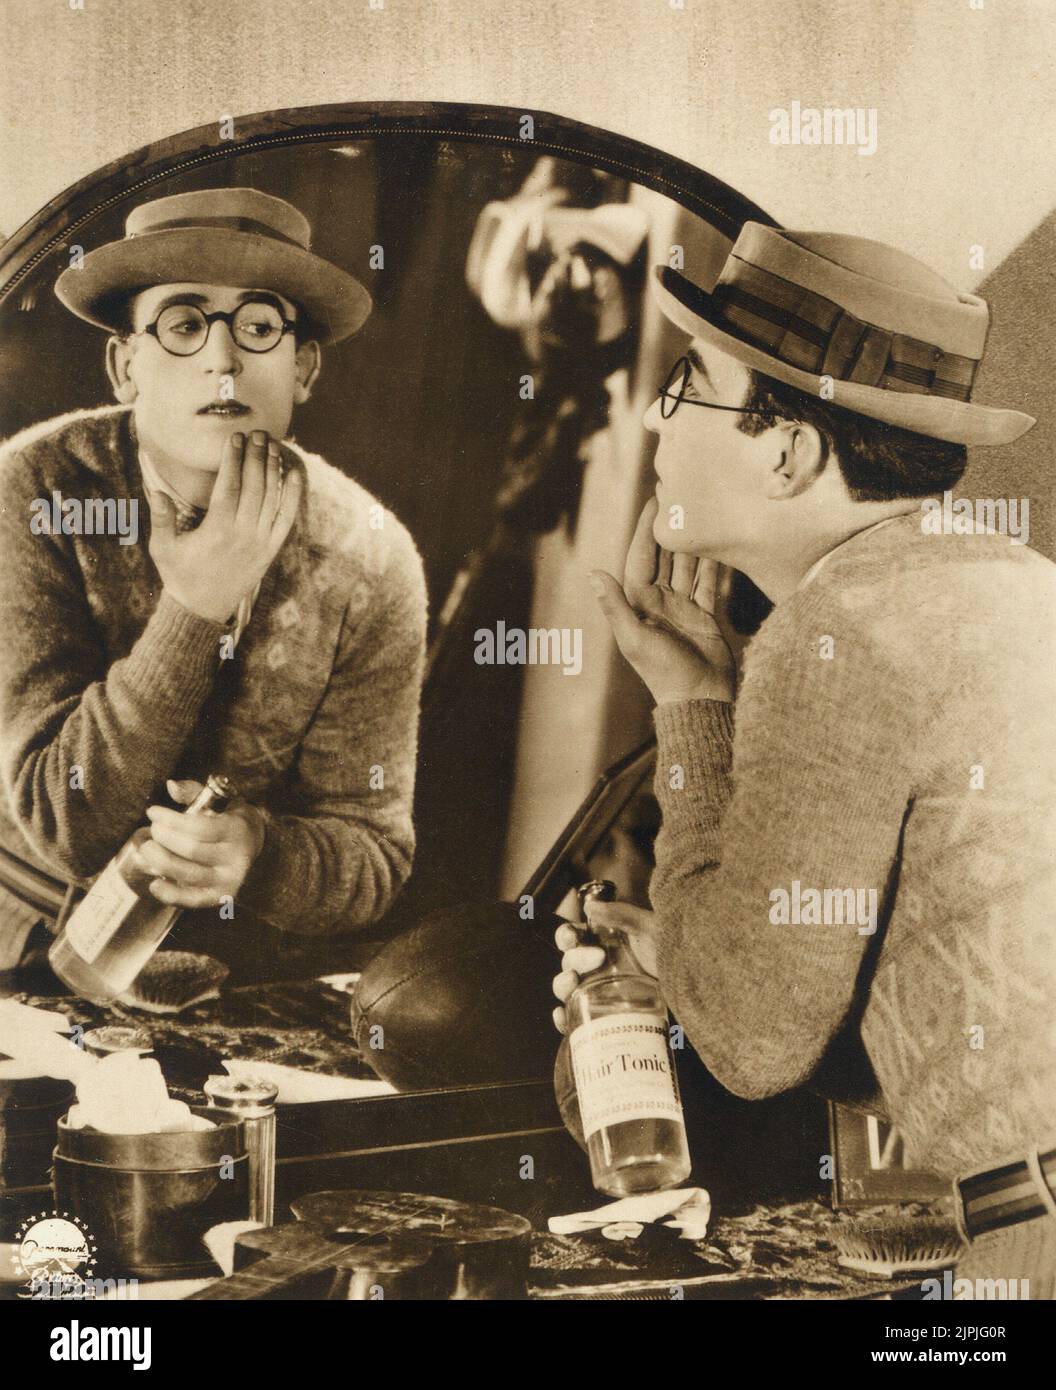 The silent movie american actor HAROLD LLOYD ( 1893 - 1971 ) - CINEMA MUTO - comiche - hair tonic - mirror - specchio - riflesso - reflex  - occhiali - glasses - hat - cappello ---- Archivio GBB Stock Photo